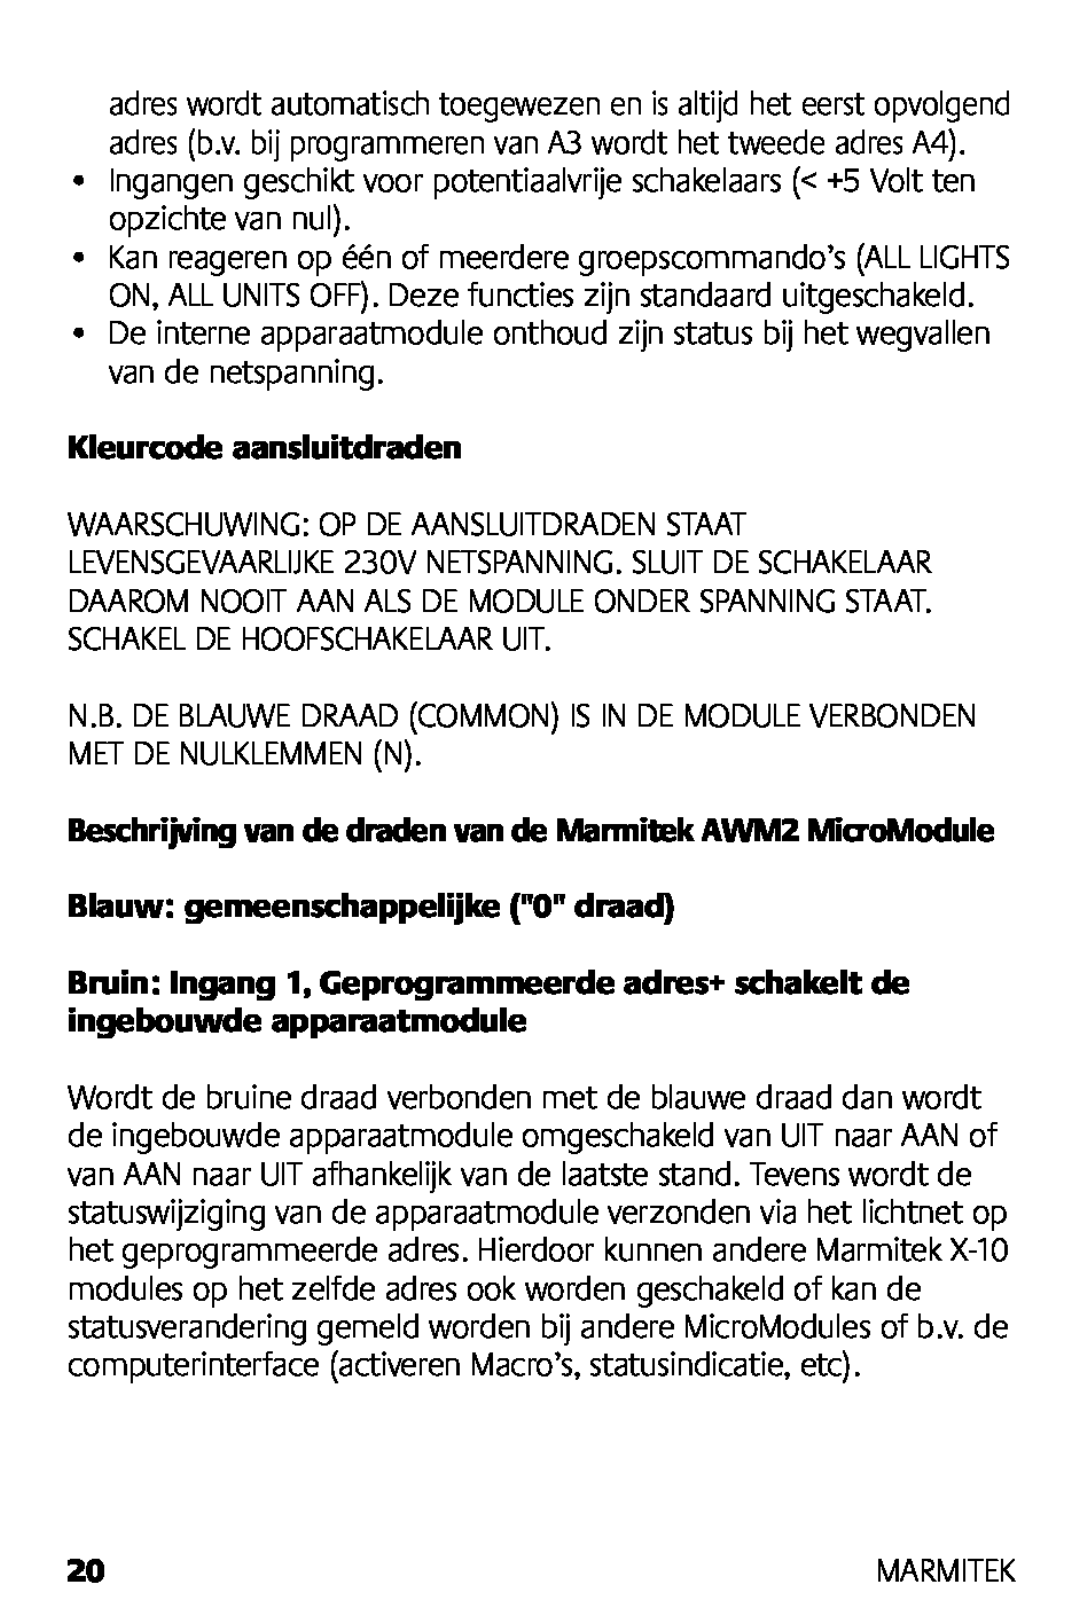 Marmitek AWM2 manual Kleurcode aansluitdraden, Blauw gemeenschappelijke 0 draad 